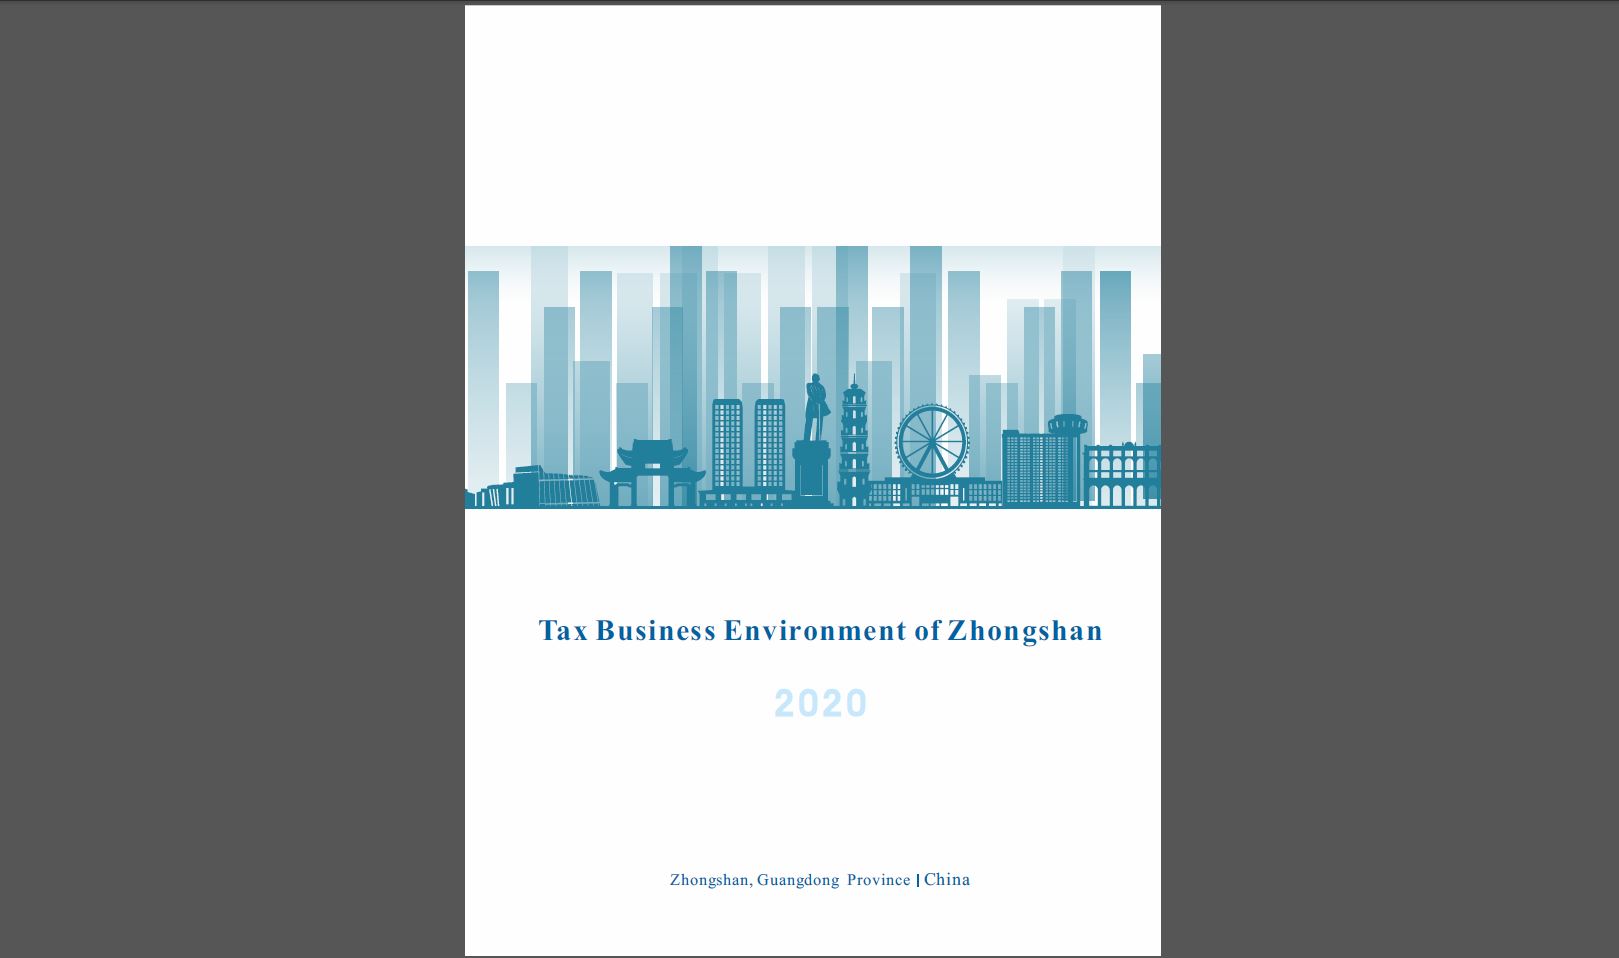 Tax Business Environment of Zhongshan 2020